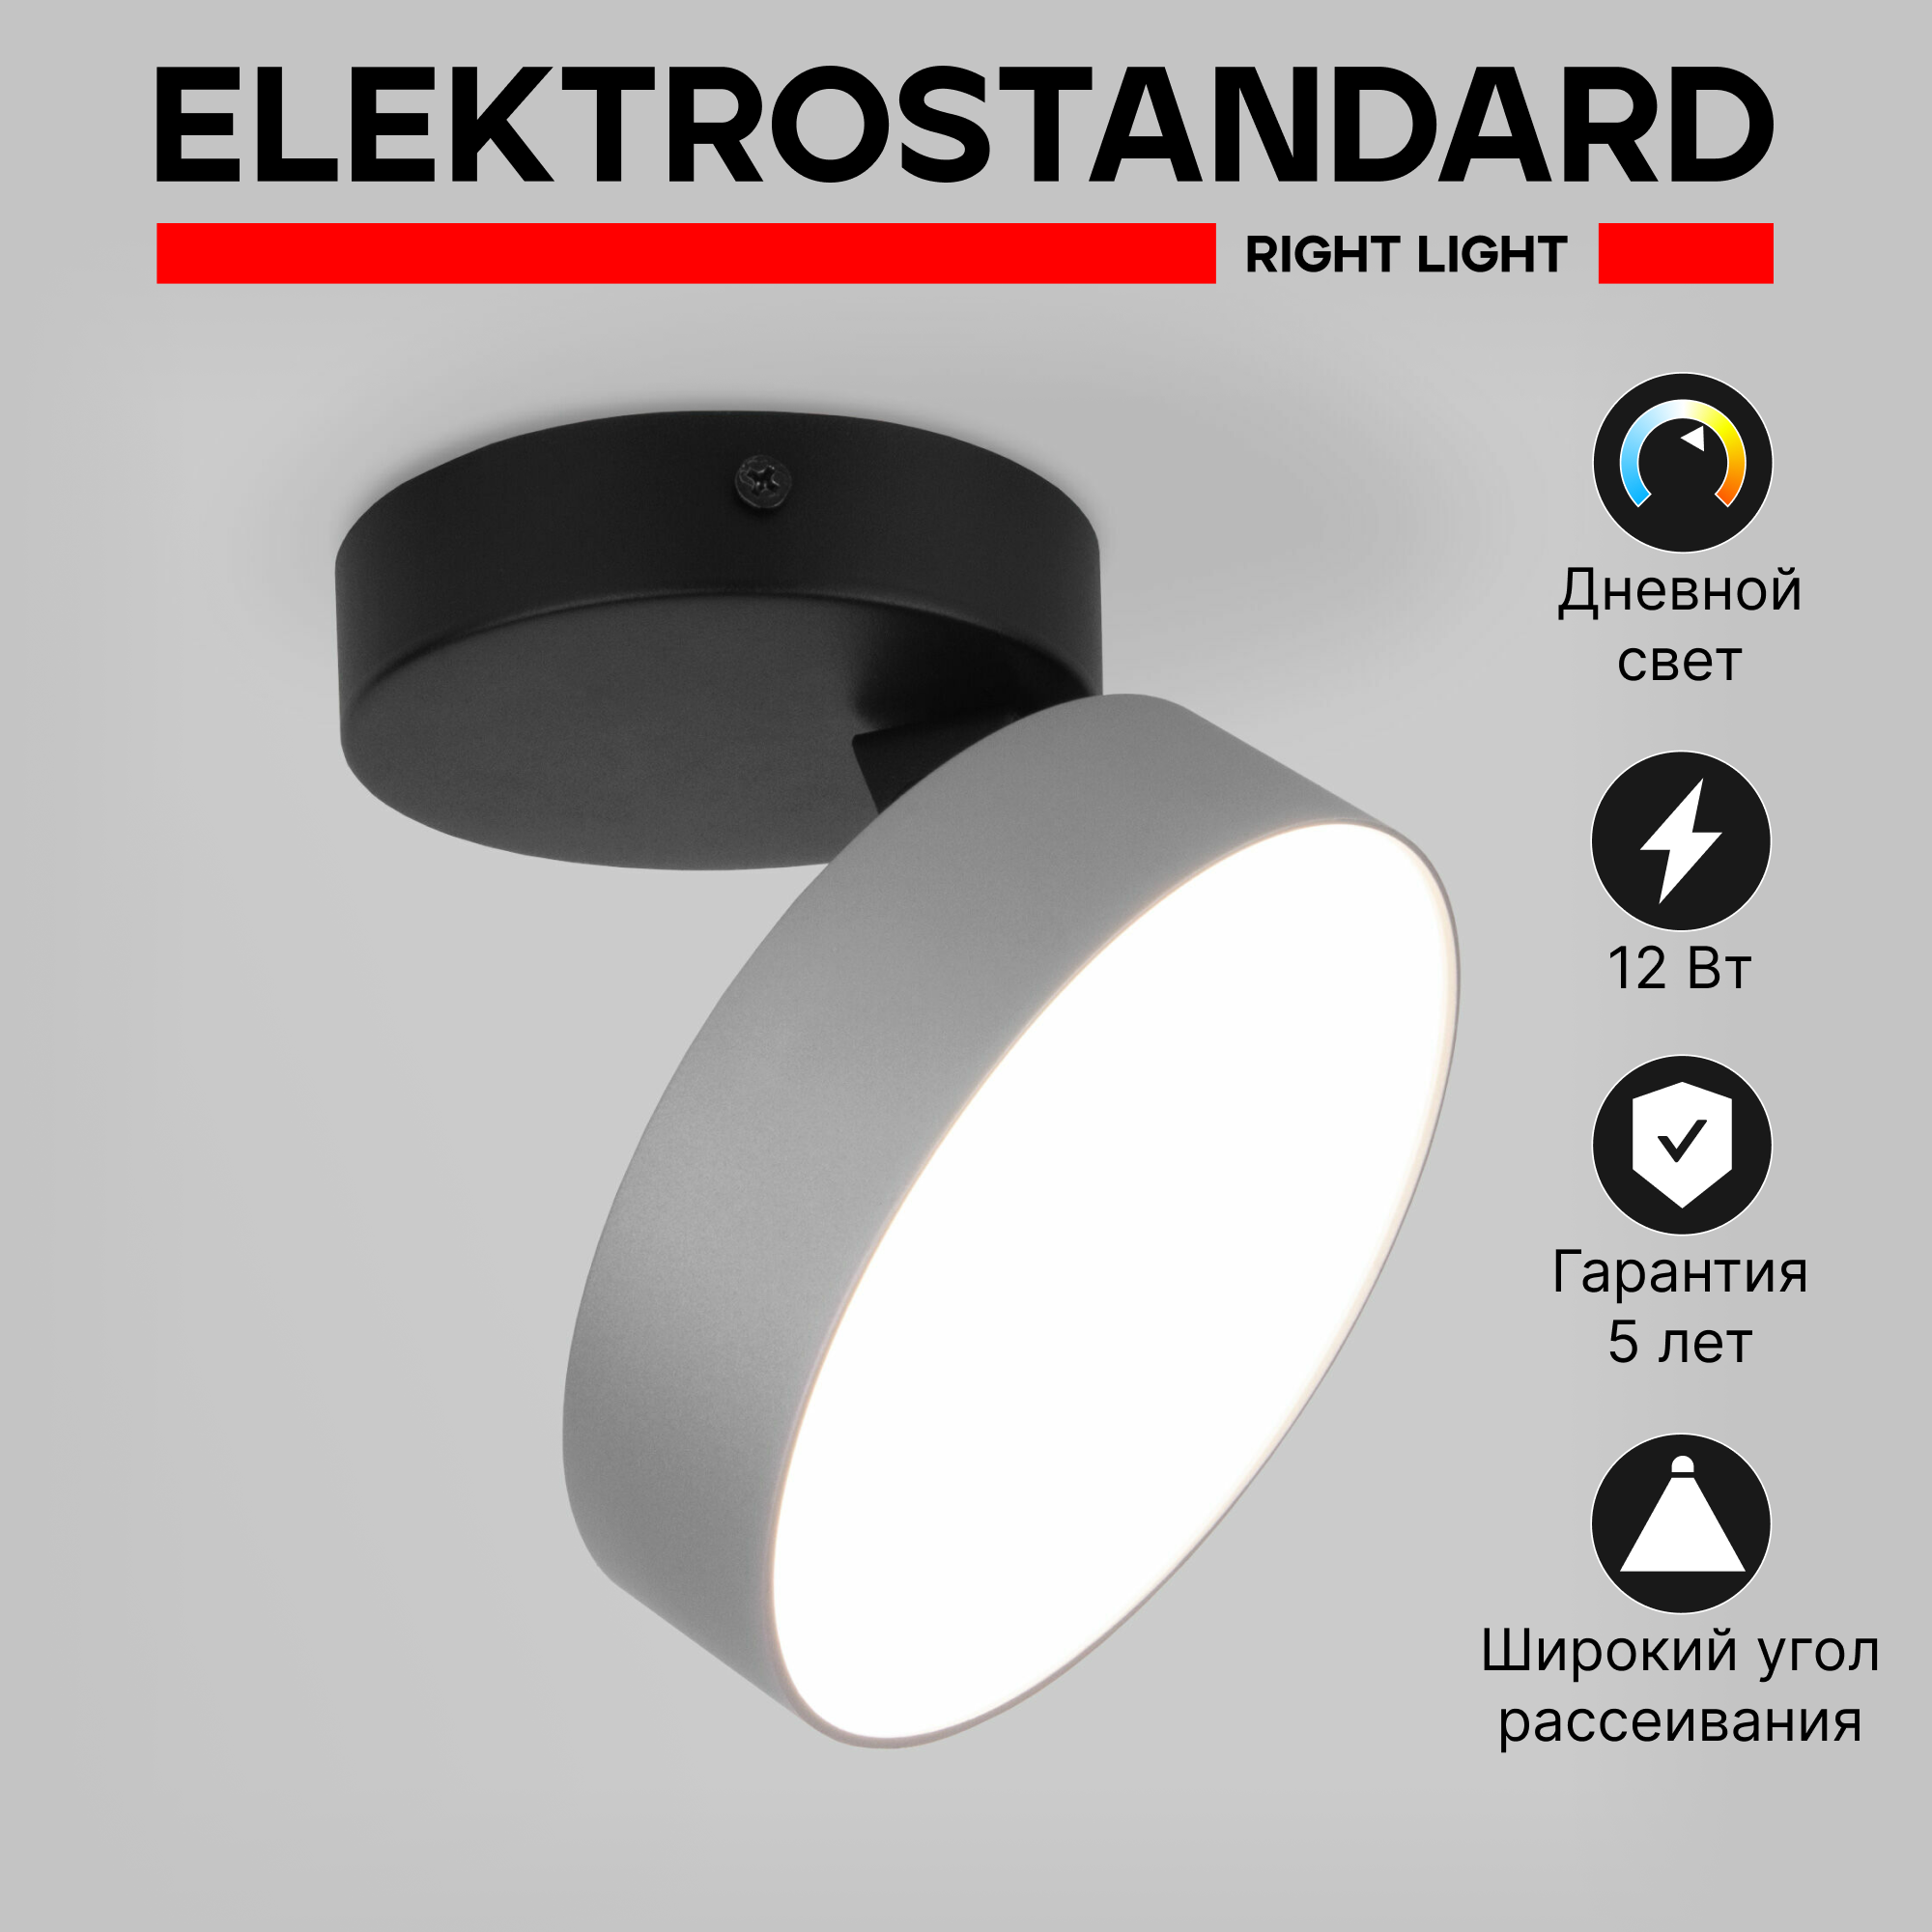 Спот / Накладной светодиодный светильник с поворотным плафоном Elektrostandard Pila 25135/LED, 12 Вт, 4200К, цвет серебро